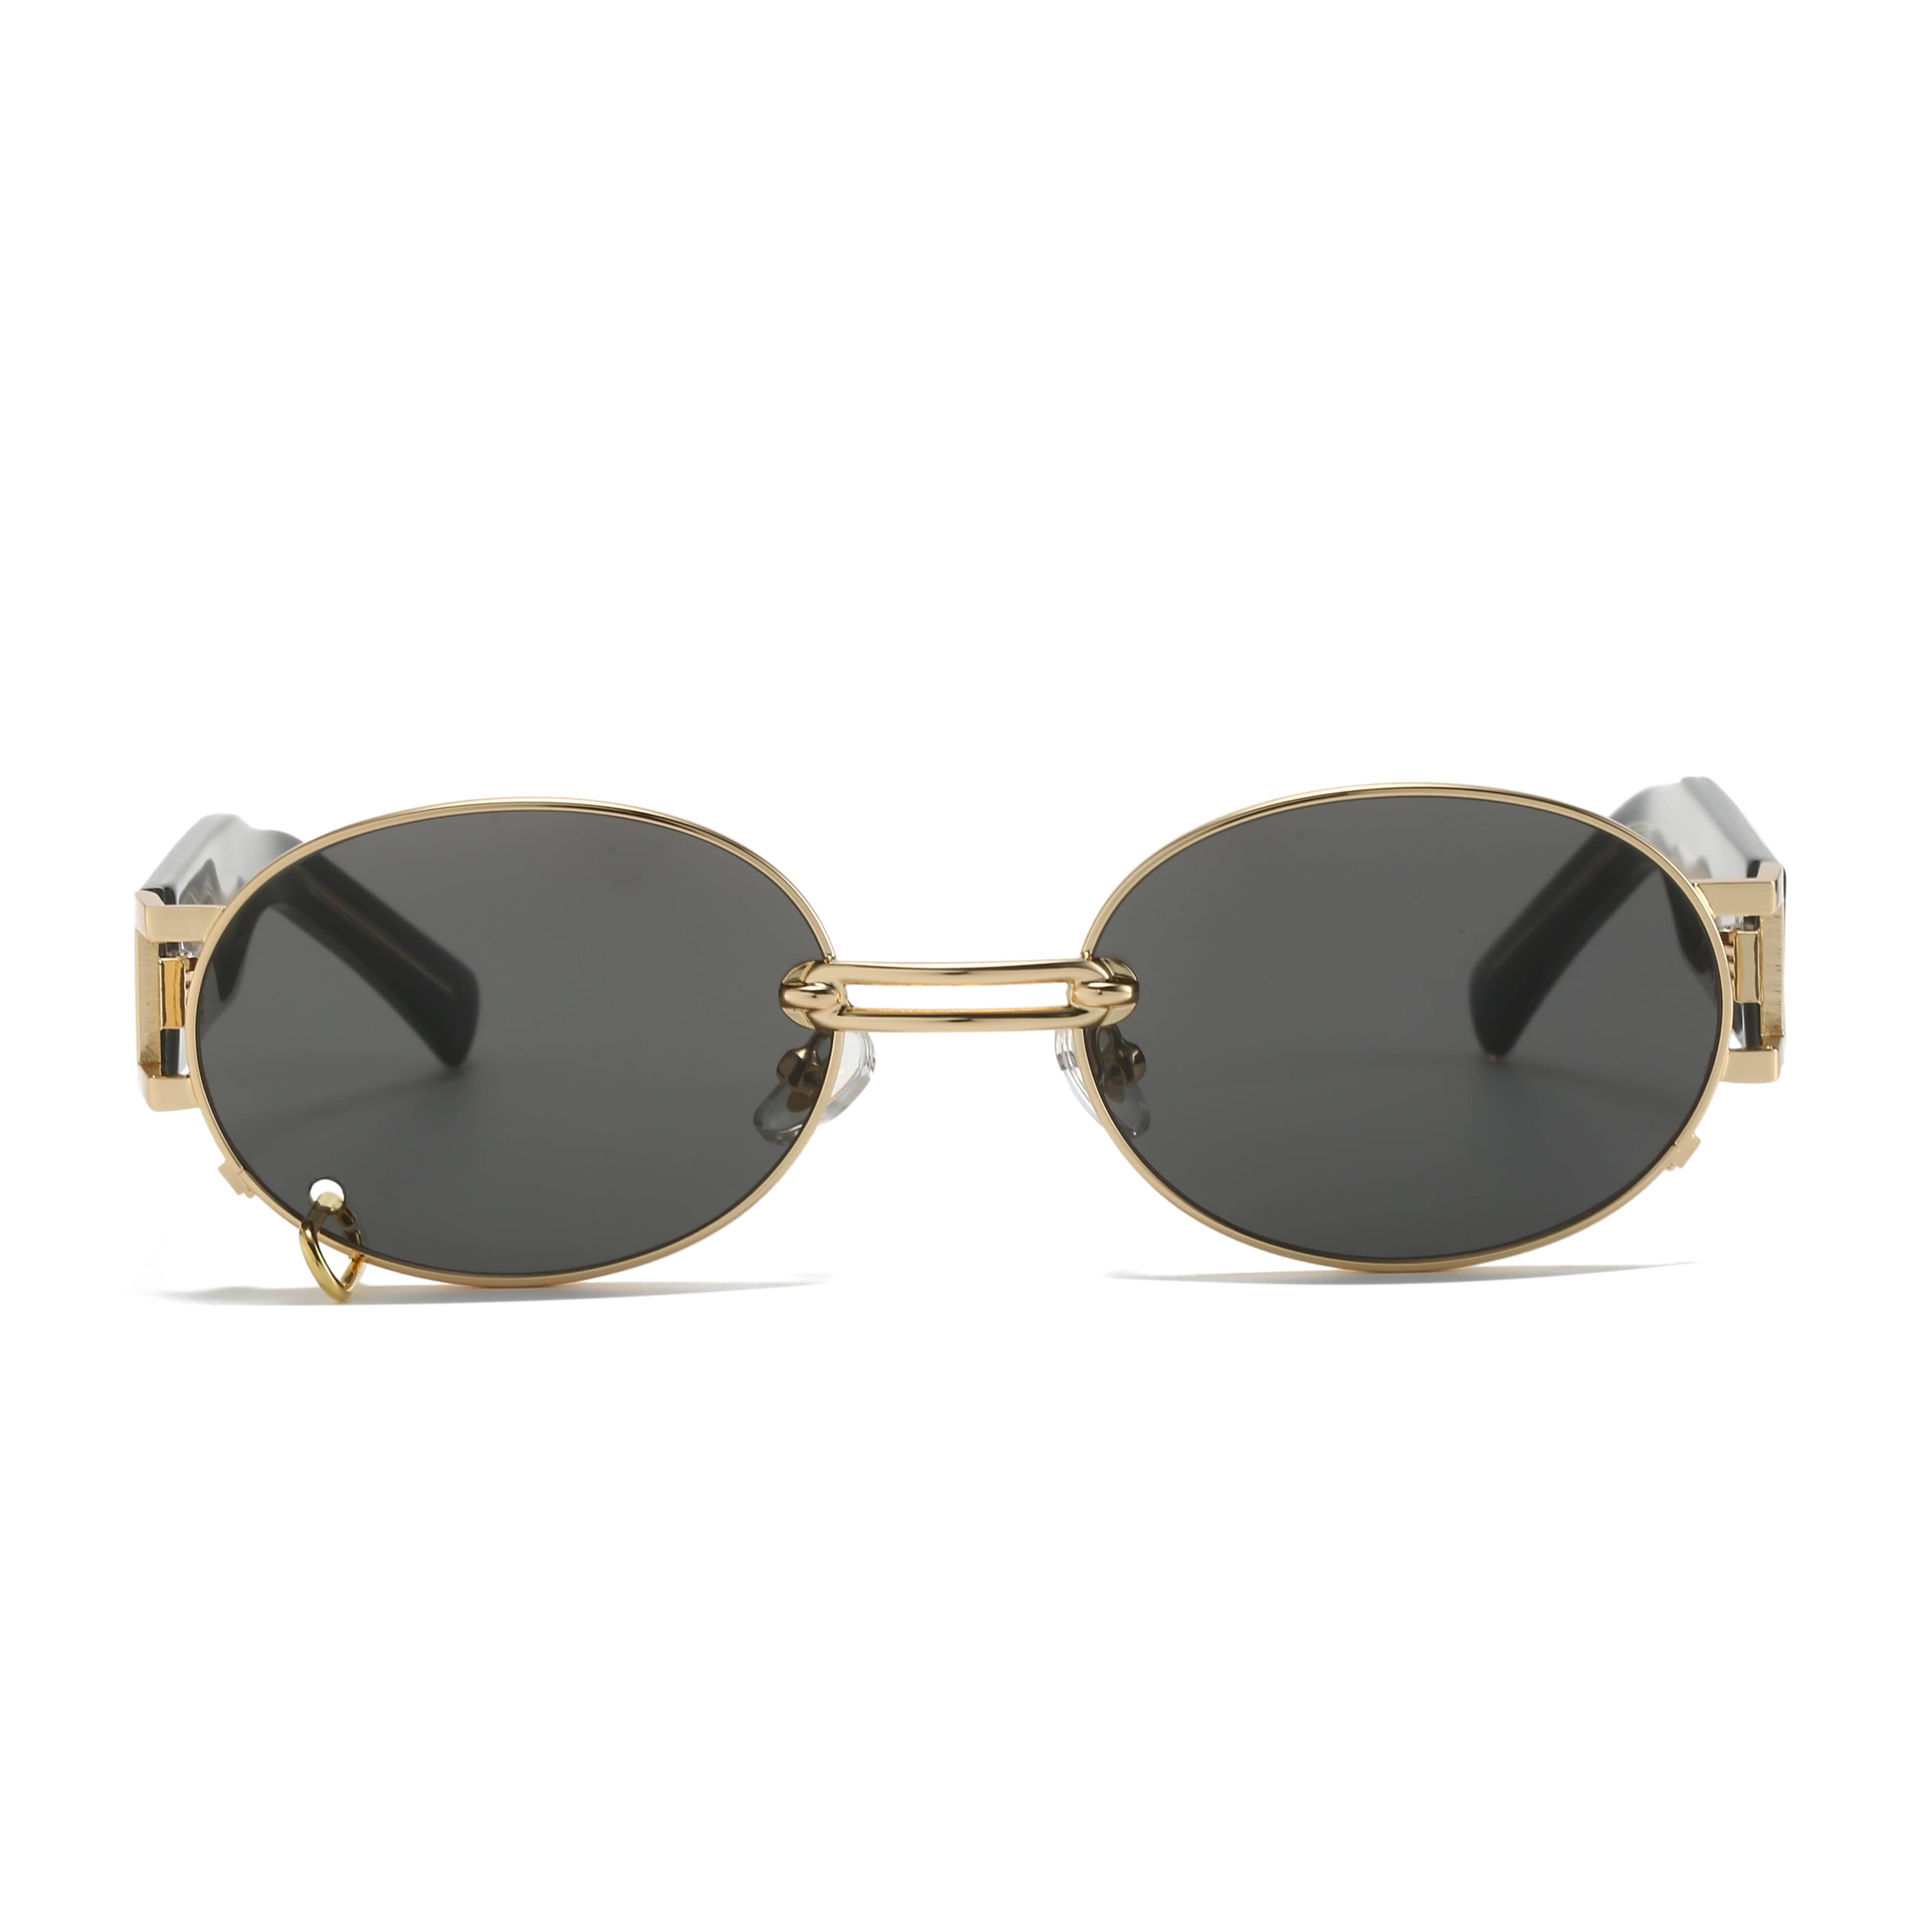 GIUSTIZIERI VECCHI Sunglasses Small / Black with Gold MegaVolt Uno